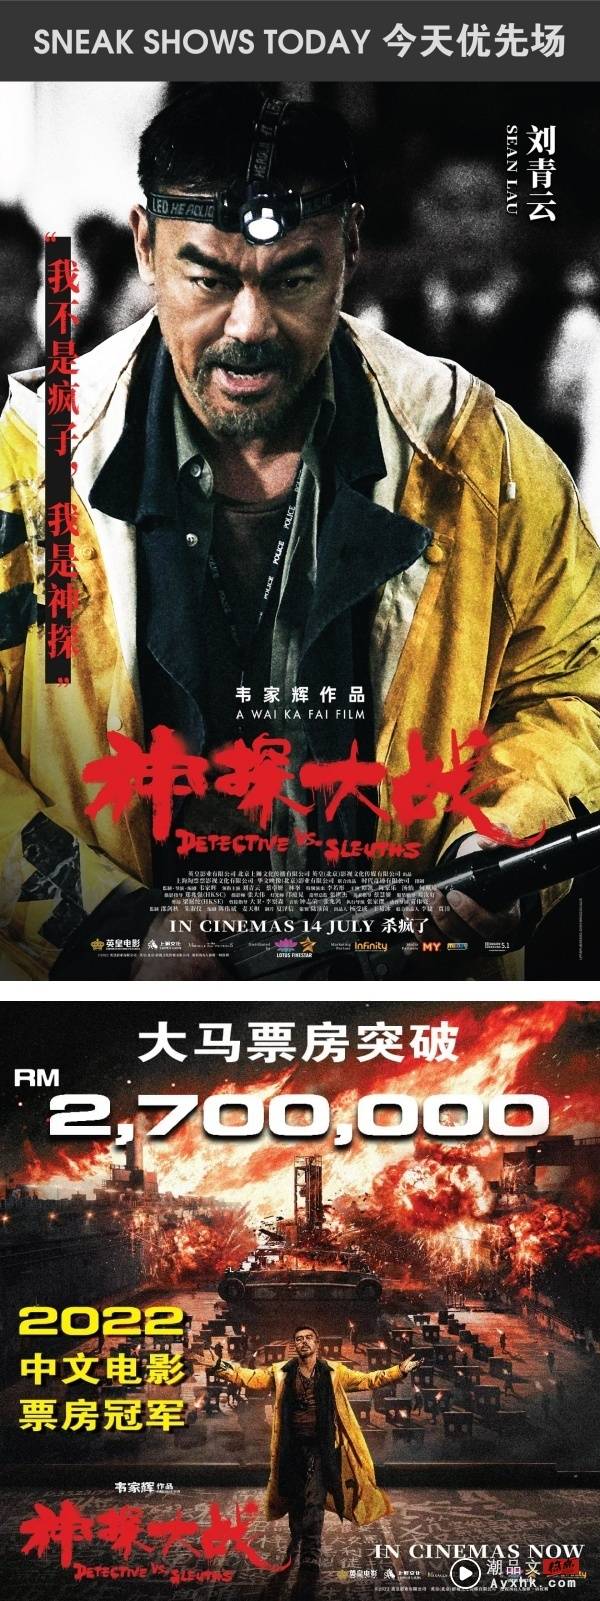 【影评】《神探大战》绝对是今年最爽的警匪动作片！刘青云展现超癫狂演技 娱乐资讯 图1张